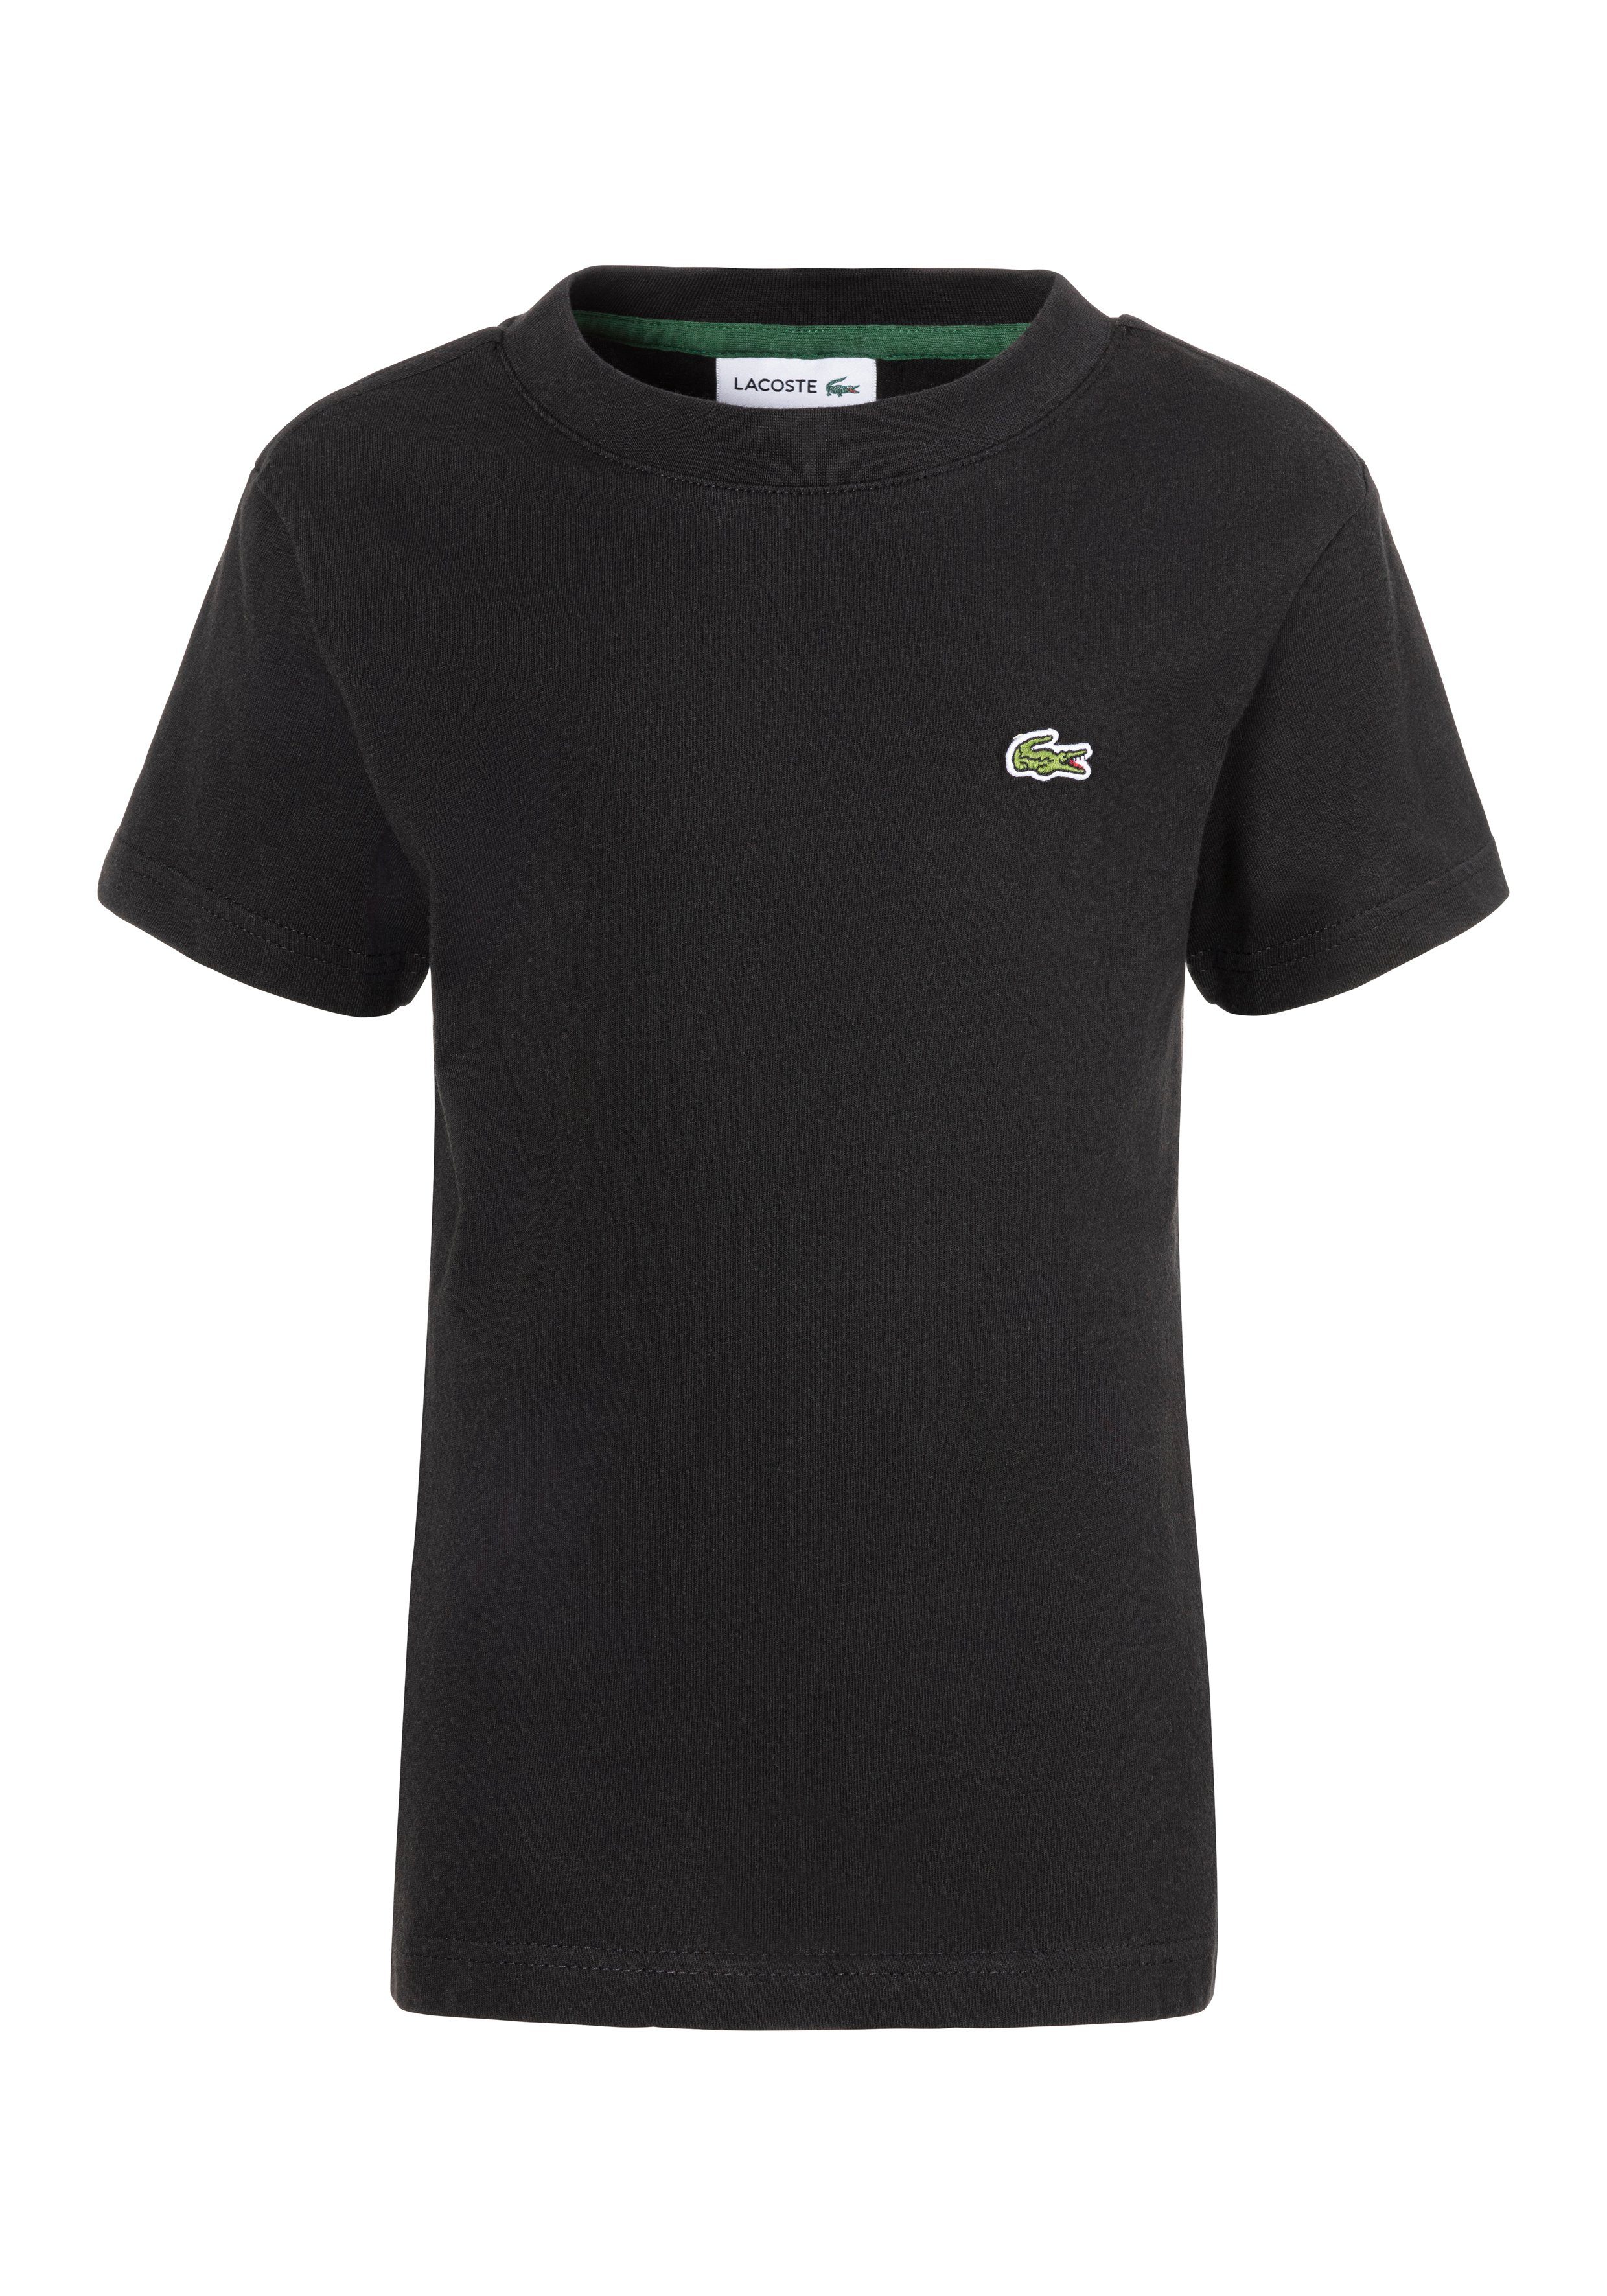 Lacoste T-shirt met logo zwart Katoen Ronde hals Logo 116